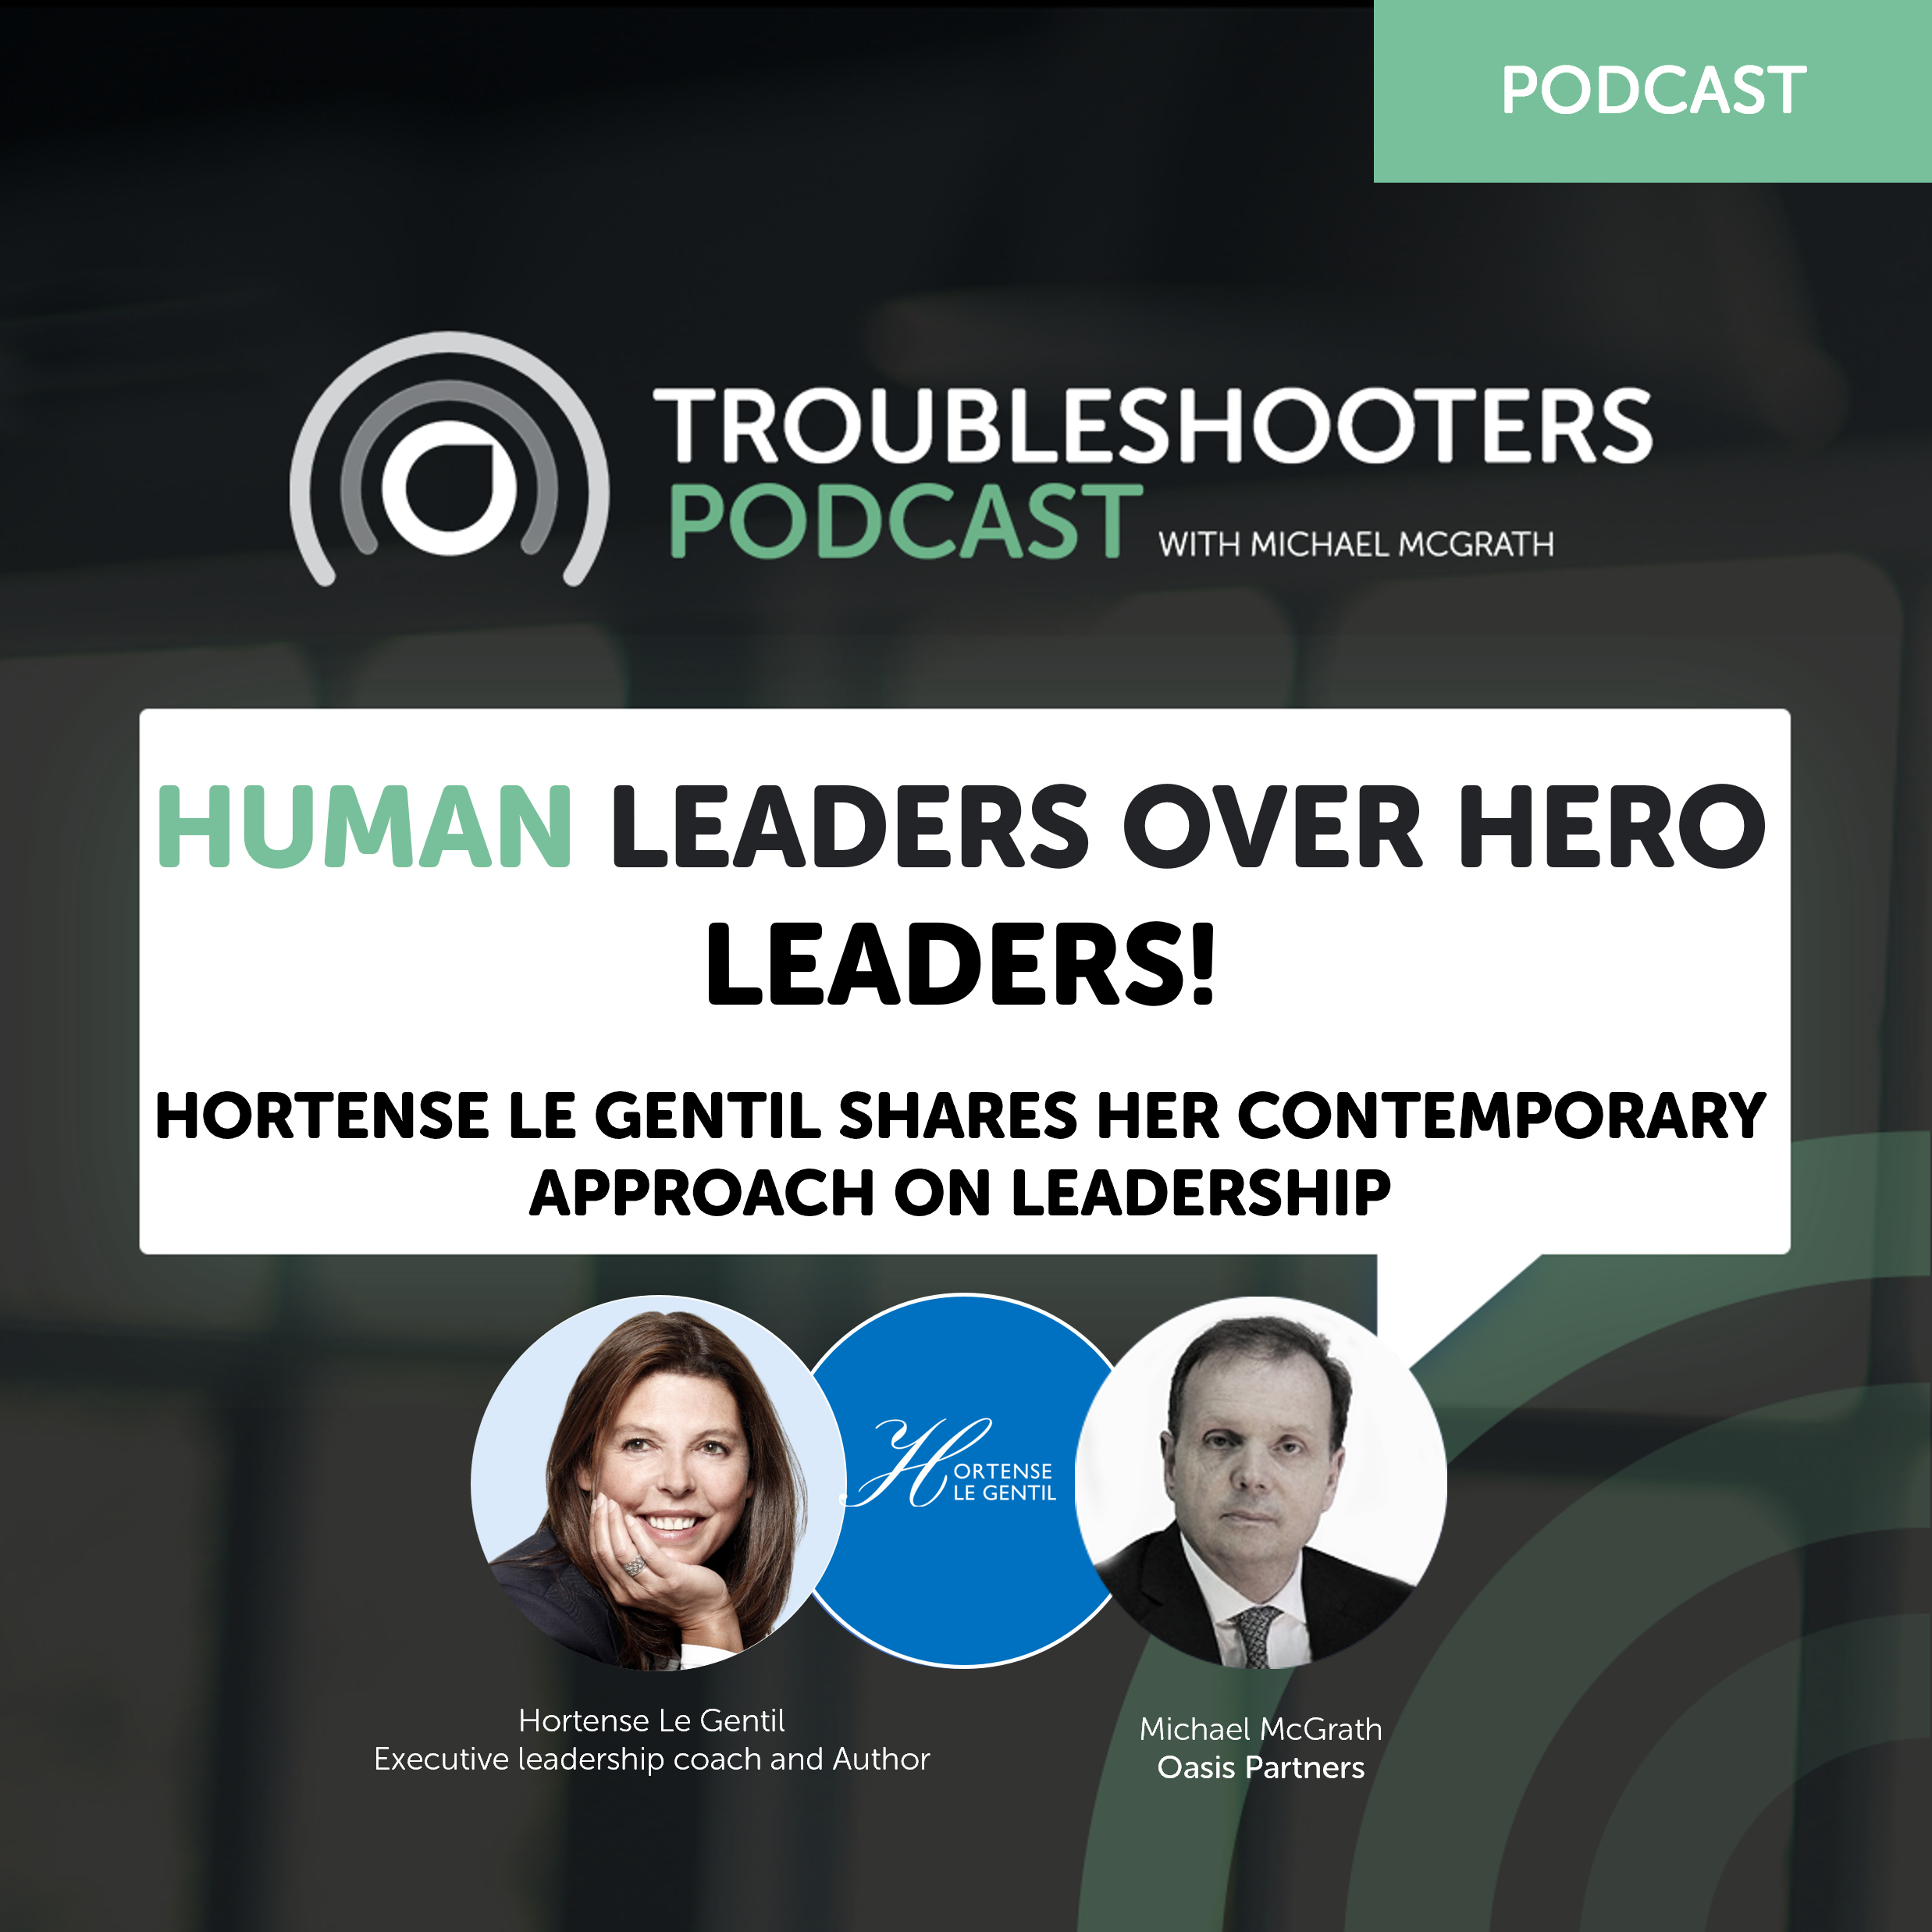 Human Leaders over Hero Leaders!